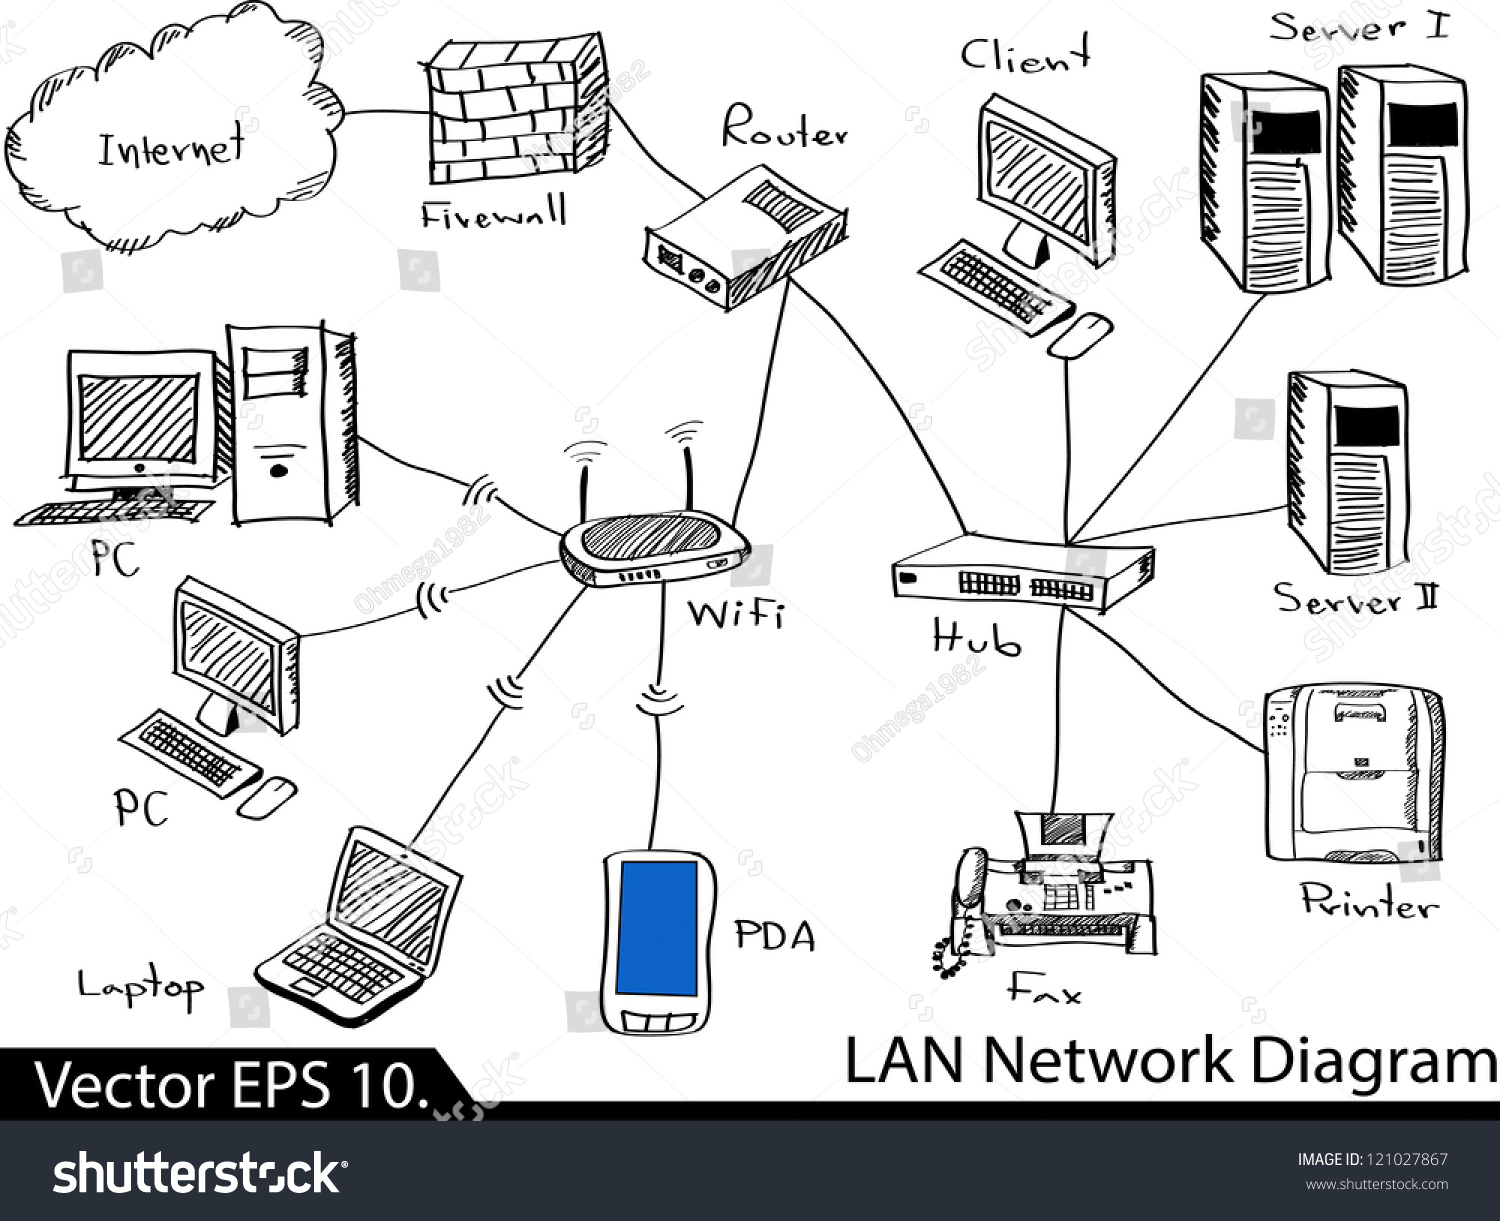 Lan Network Diagram Vector Illustrator Sketched  Eps 10